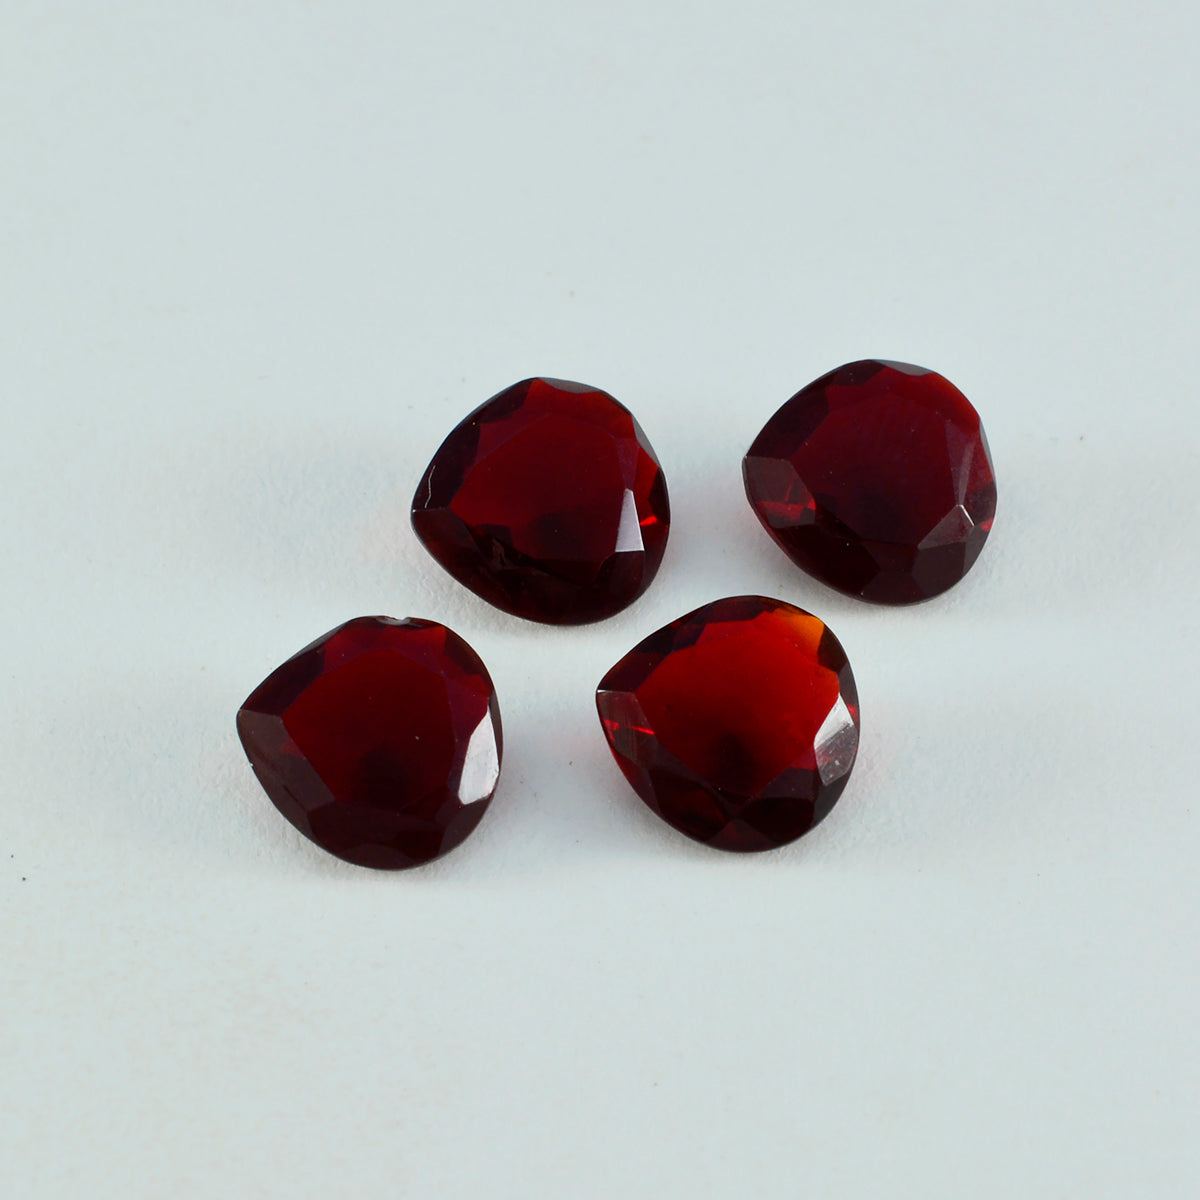 riyogems 1 шт. красный рубин cz граненый 11x11 мм в форме сердца удивительного качества, свободный драгоценный камень